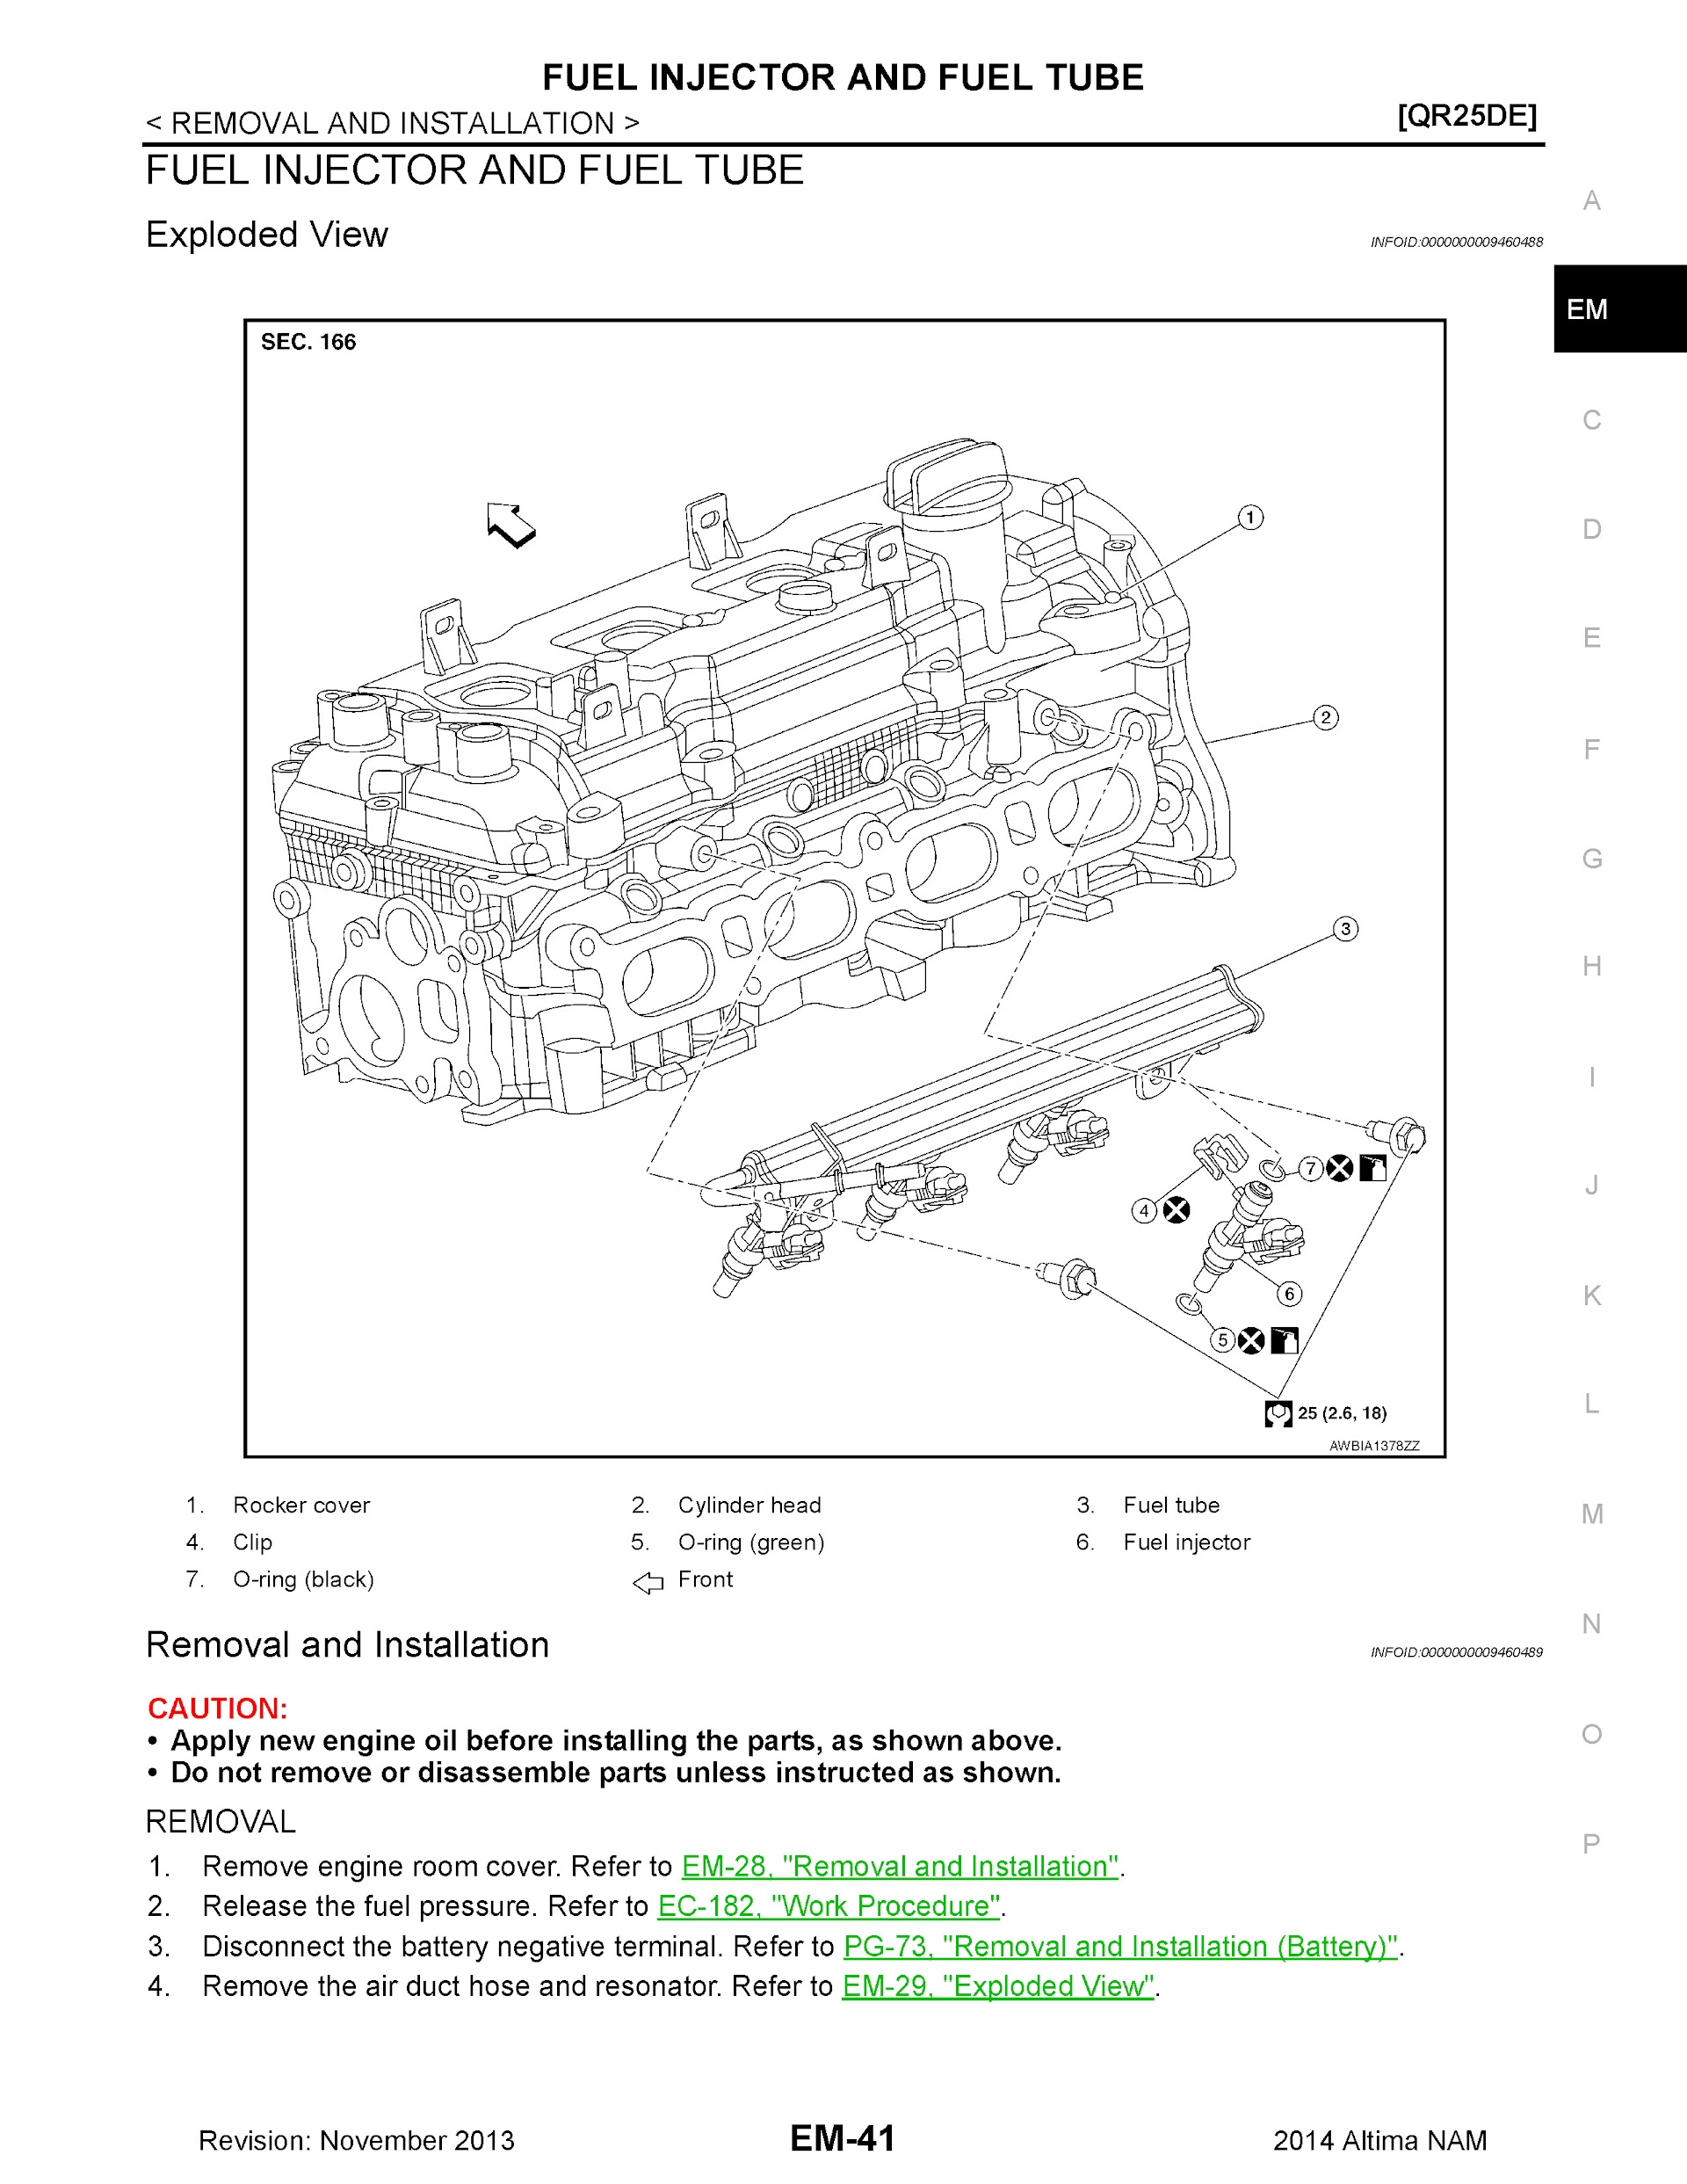 Download 2014 Nissan Altima Service Repair Manual.